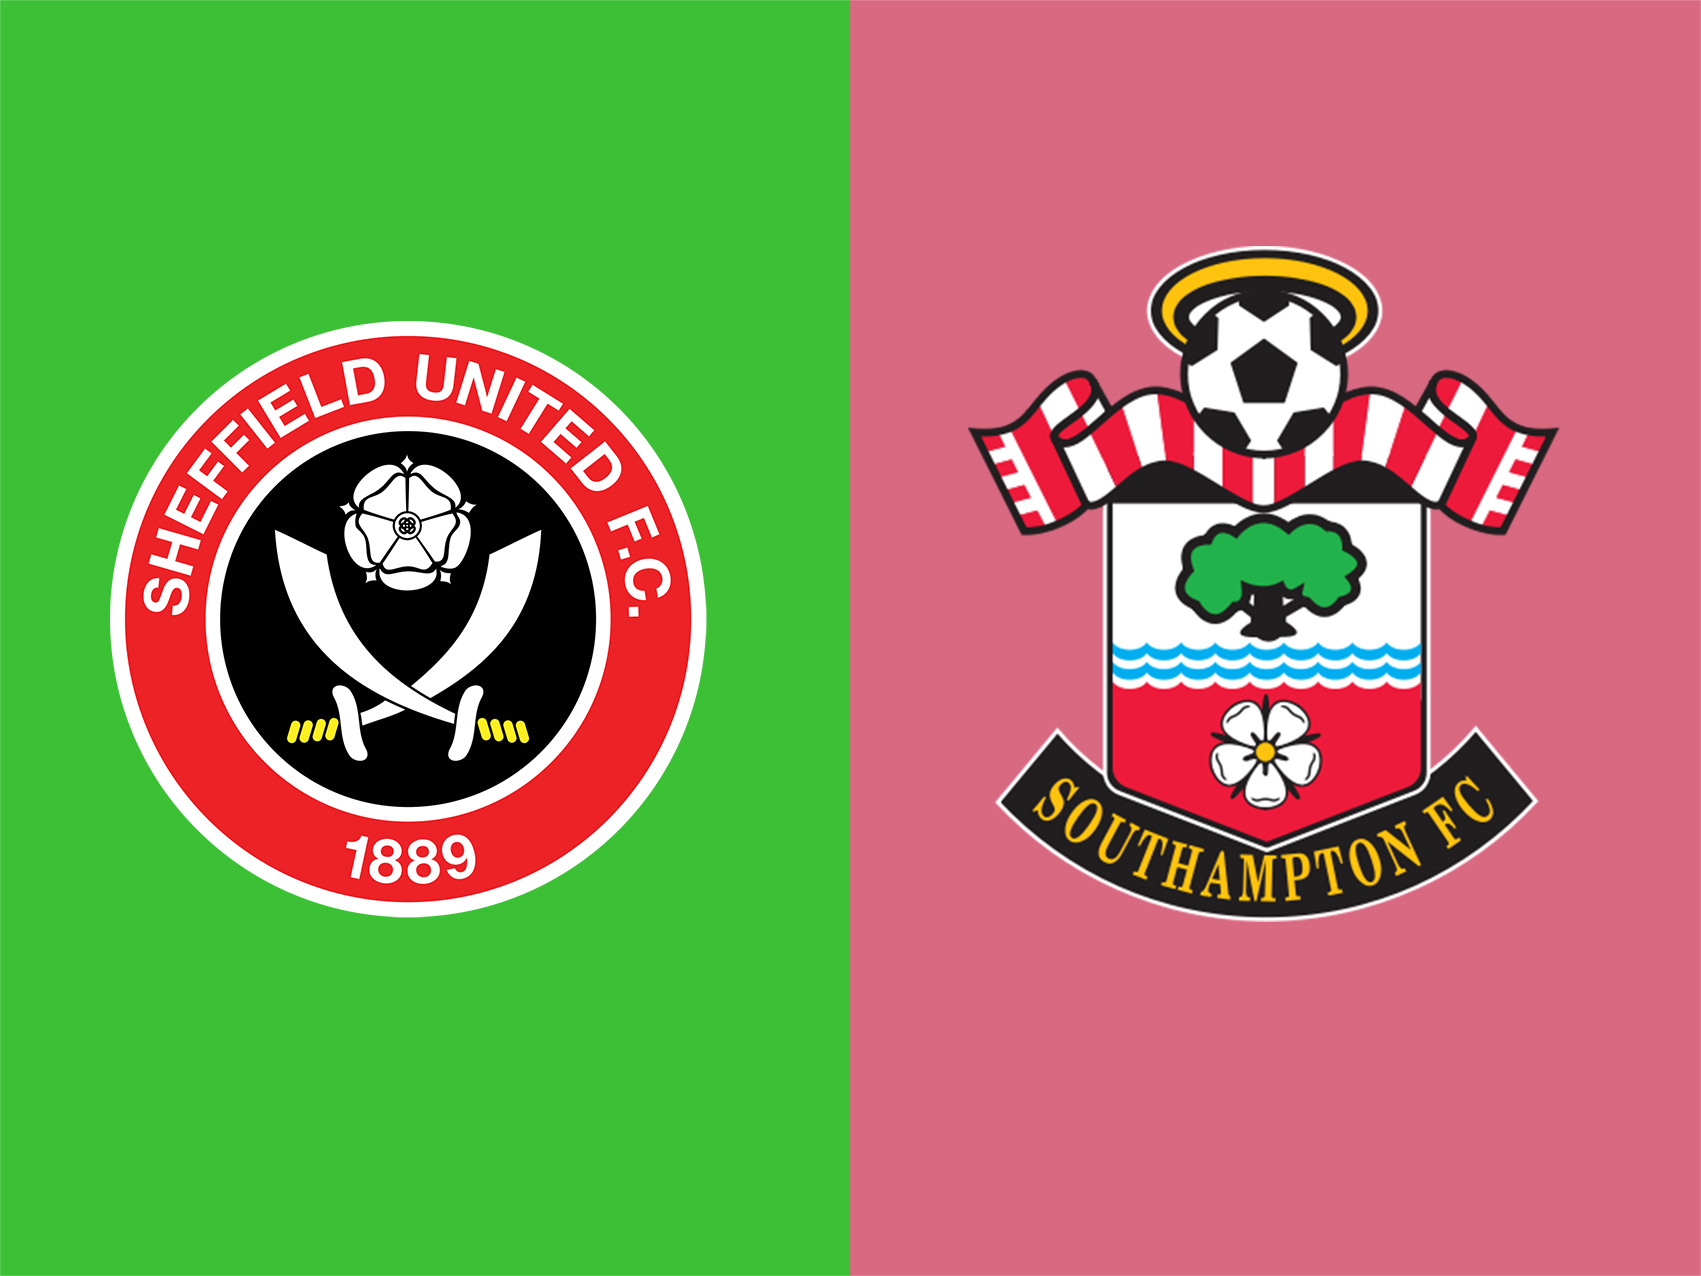 soi-keo-ca-cuoc-bong-da-ngay-14-9-Sheffield United-vs-Southampton-do-it-thang-do-nhieu-b9